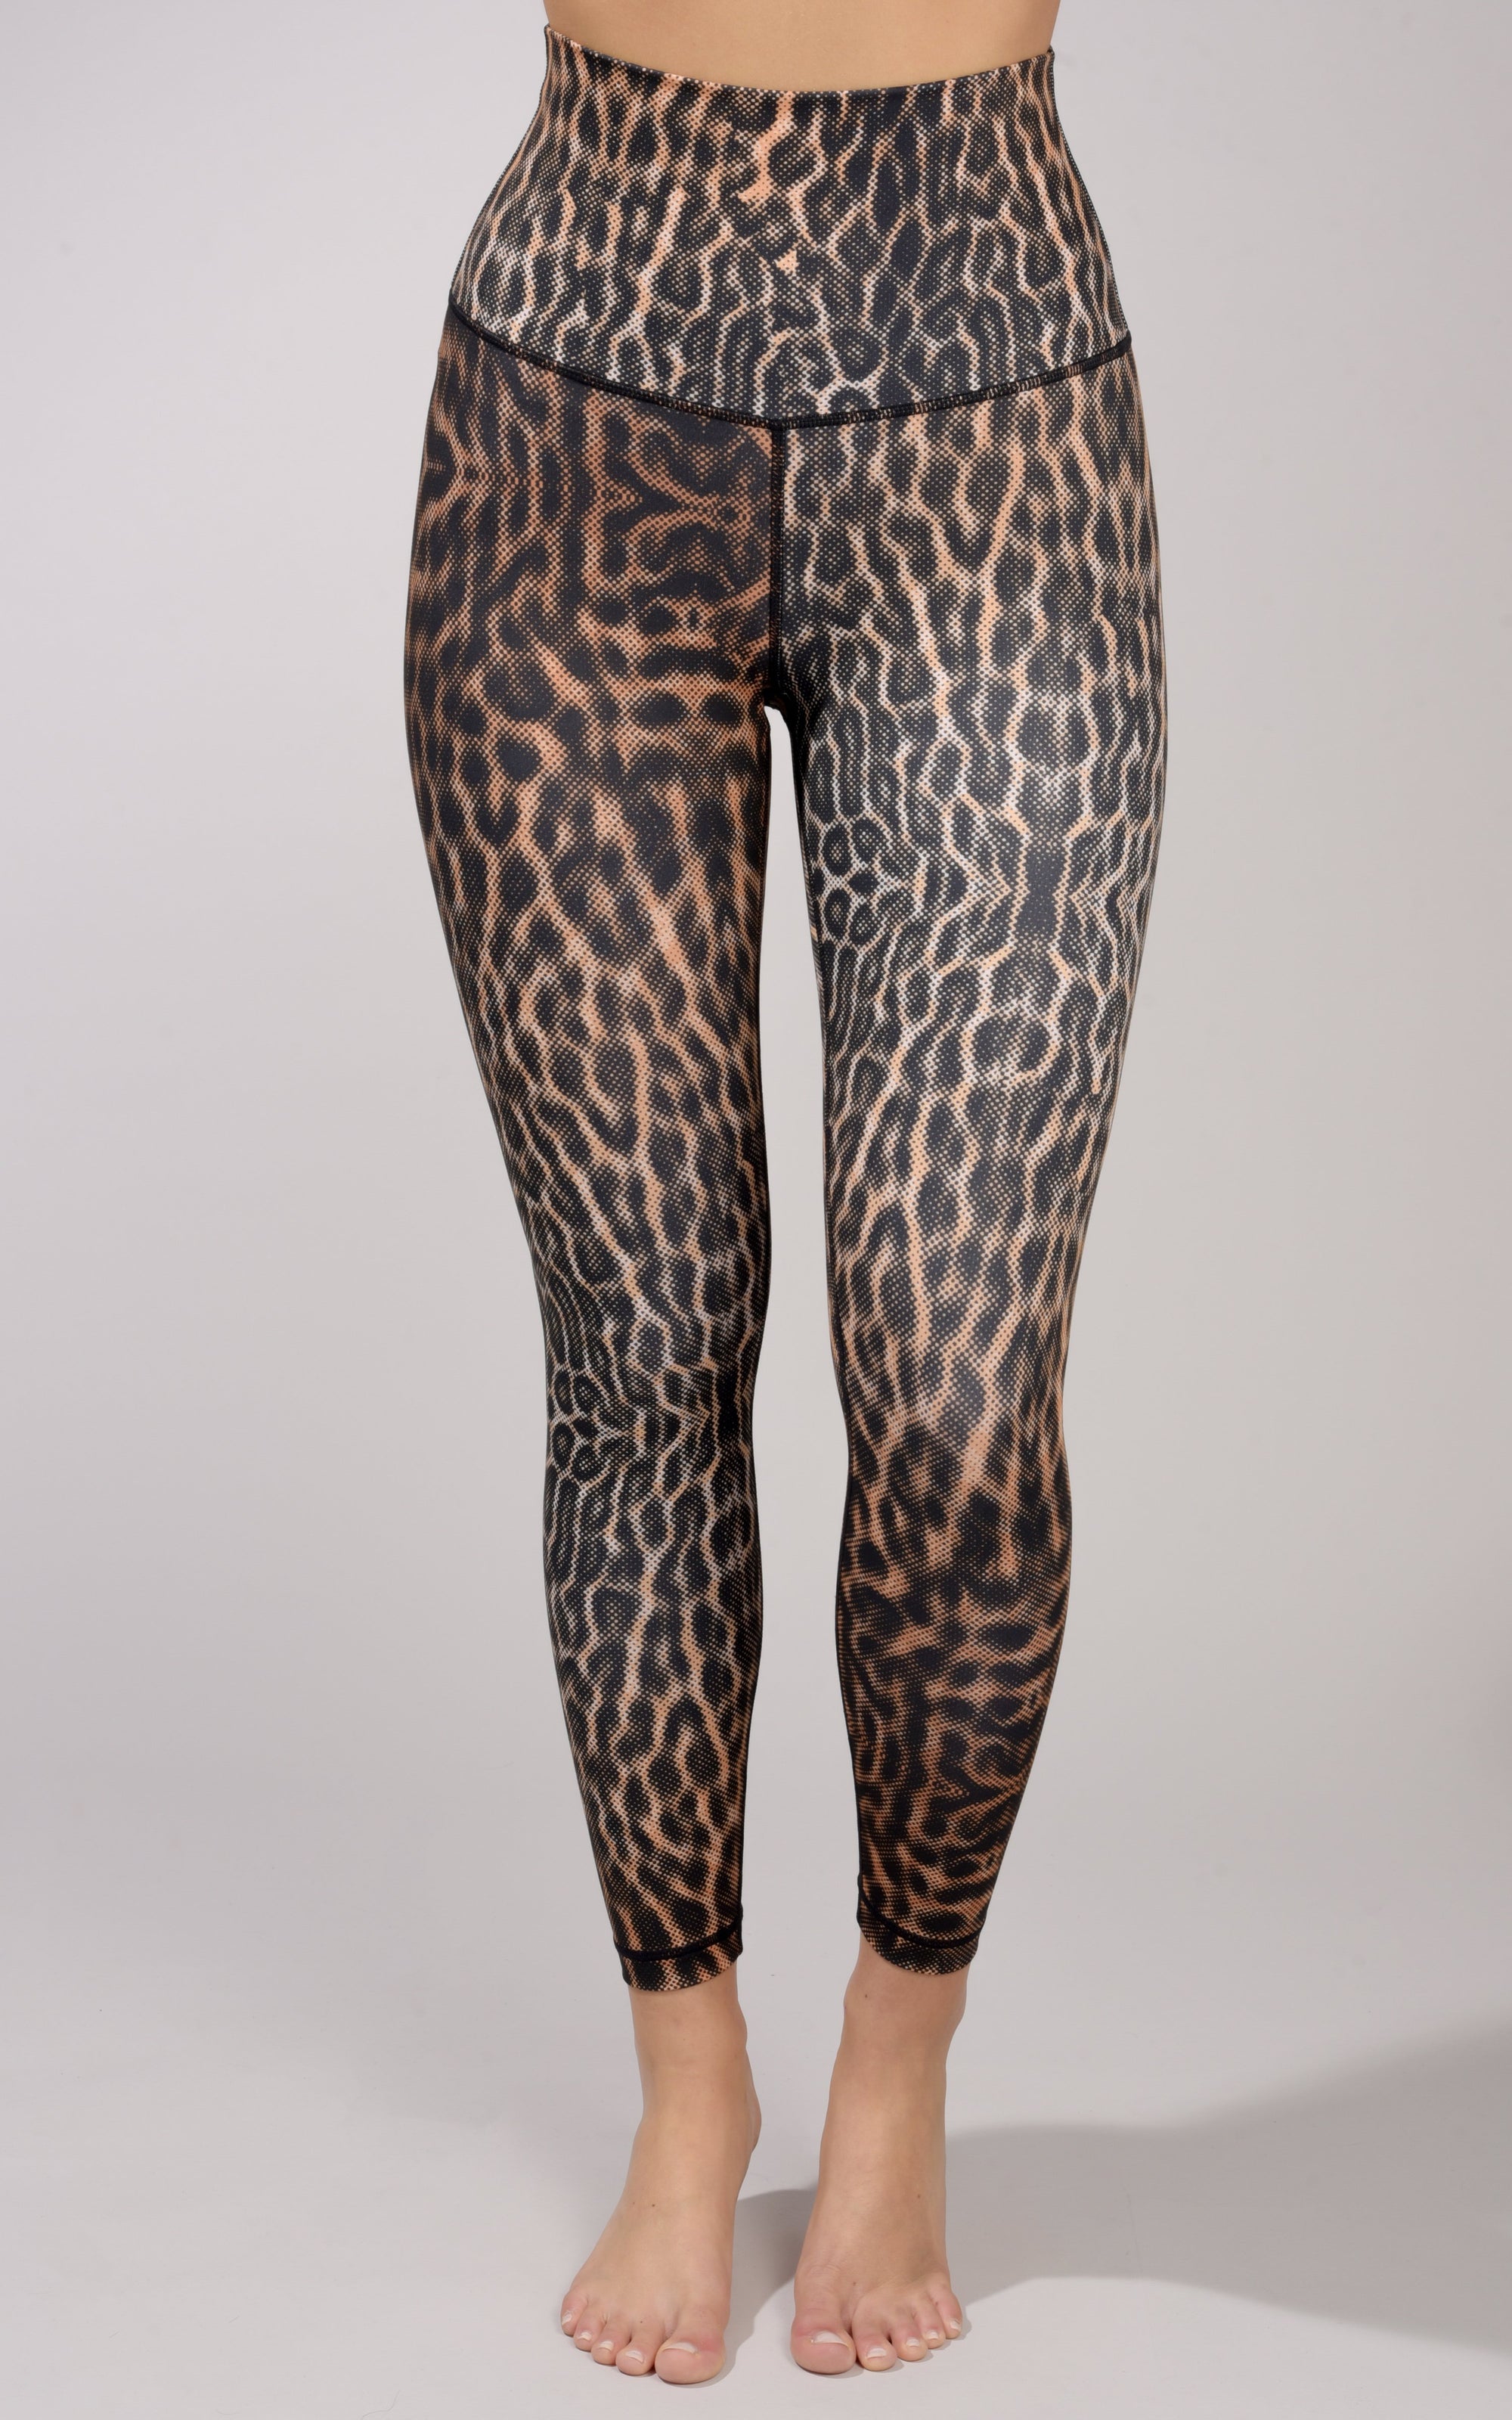 Leopard Print High Waist Legging –